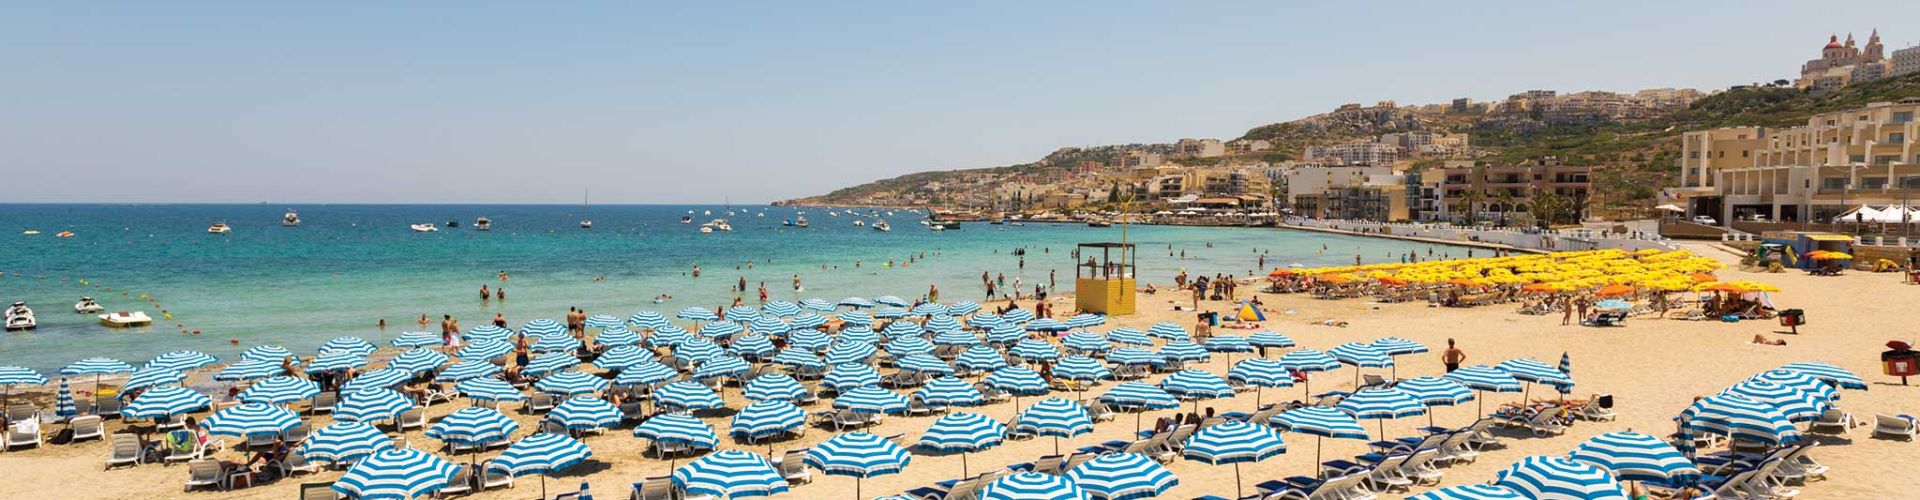 Malta Spiaggia di Mellieha